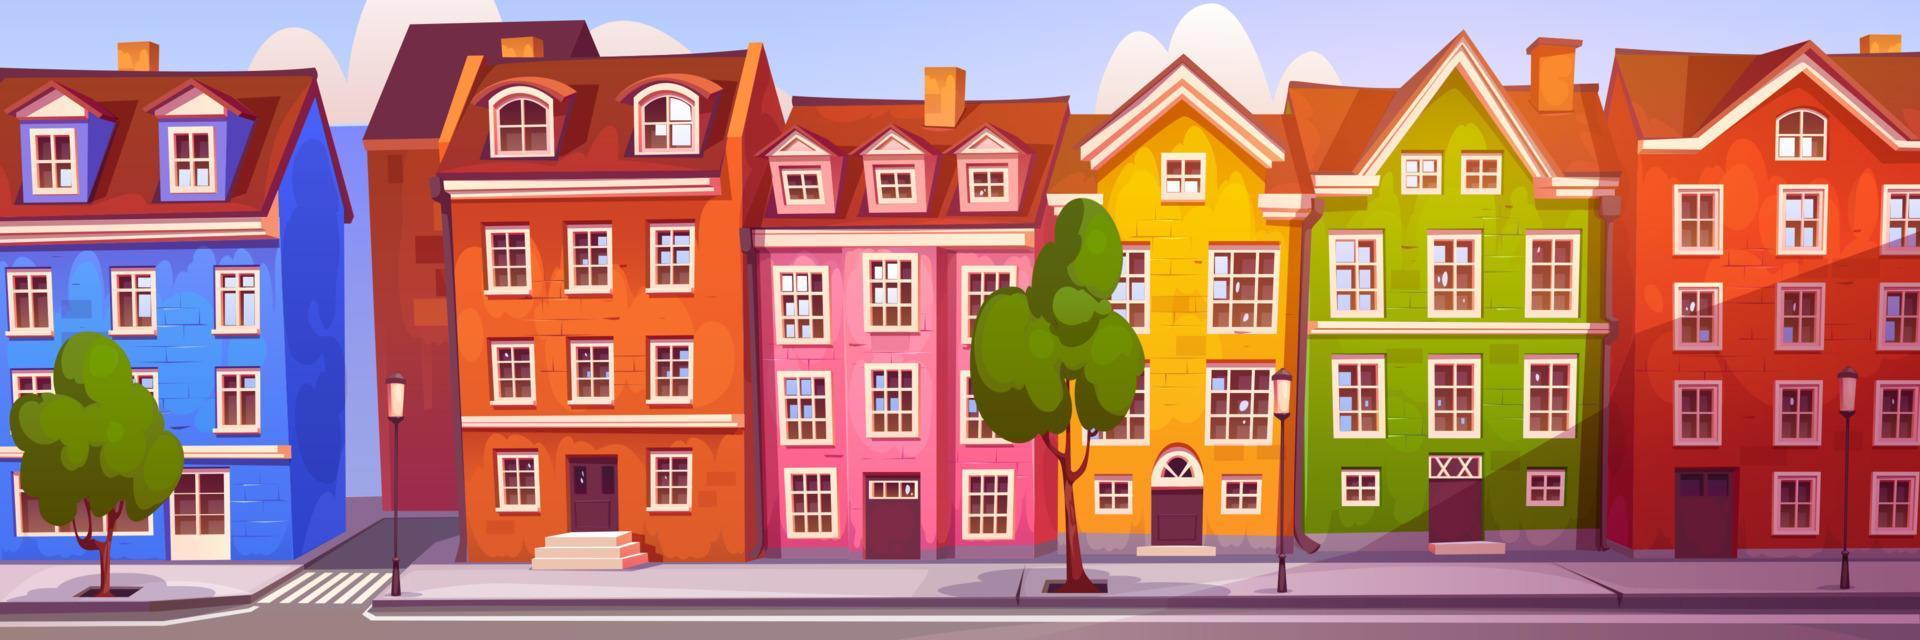 dibujos animados escandinavo calle con edificio y la carretera vector